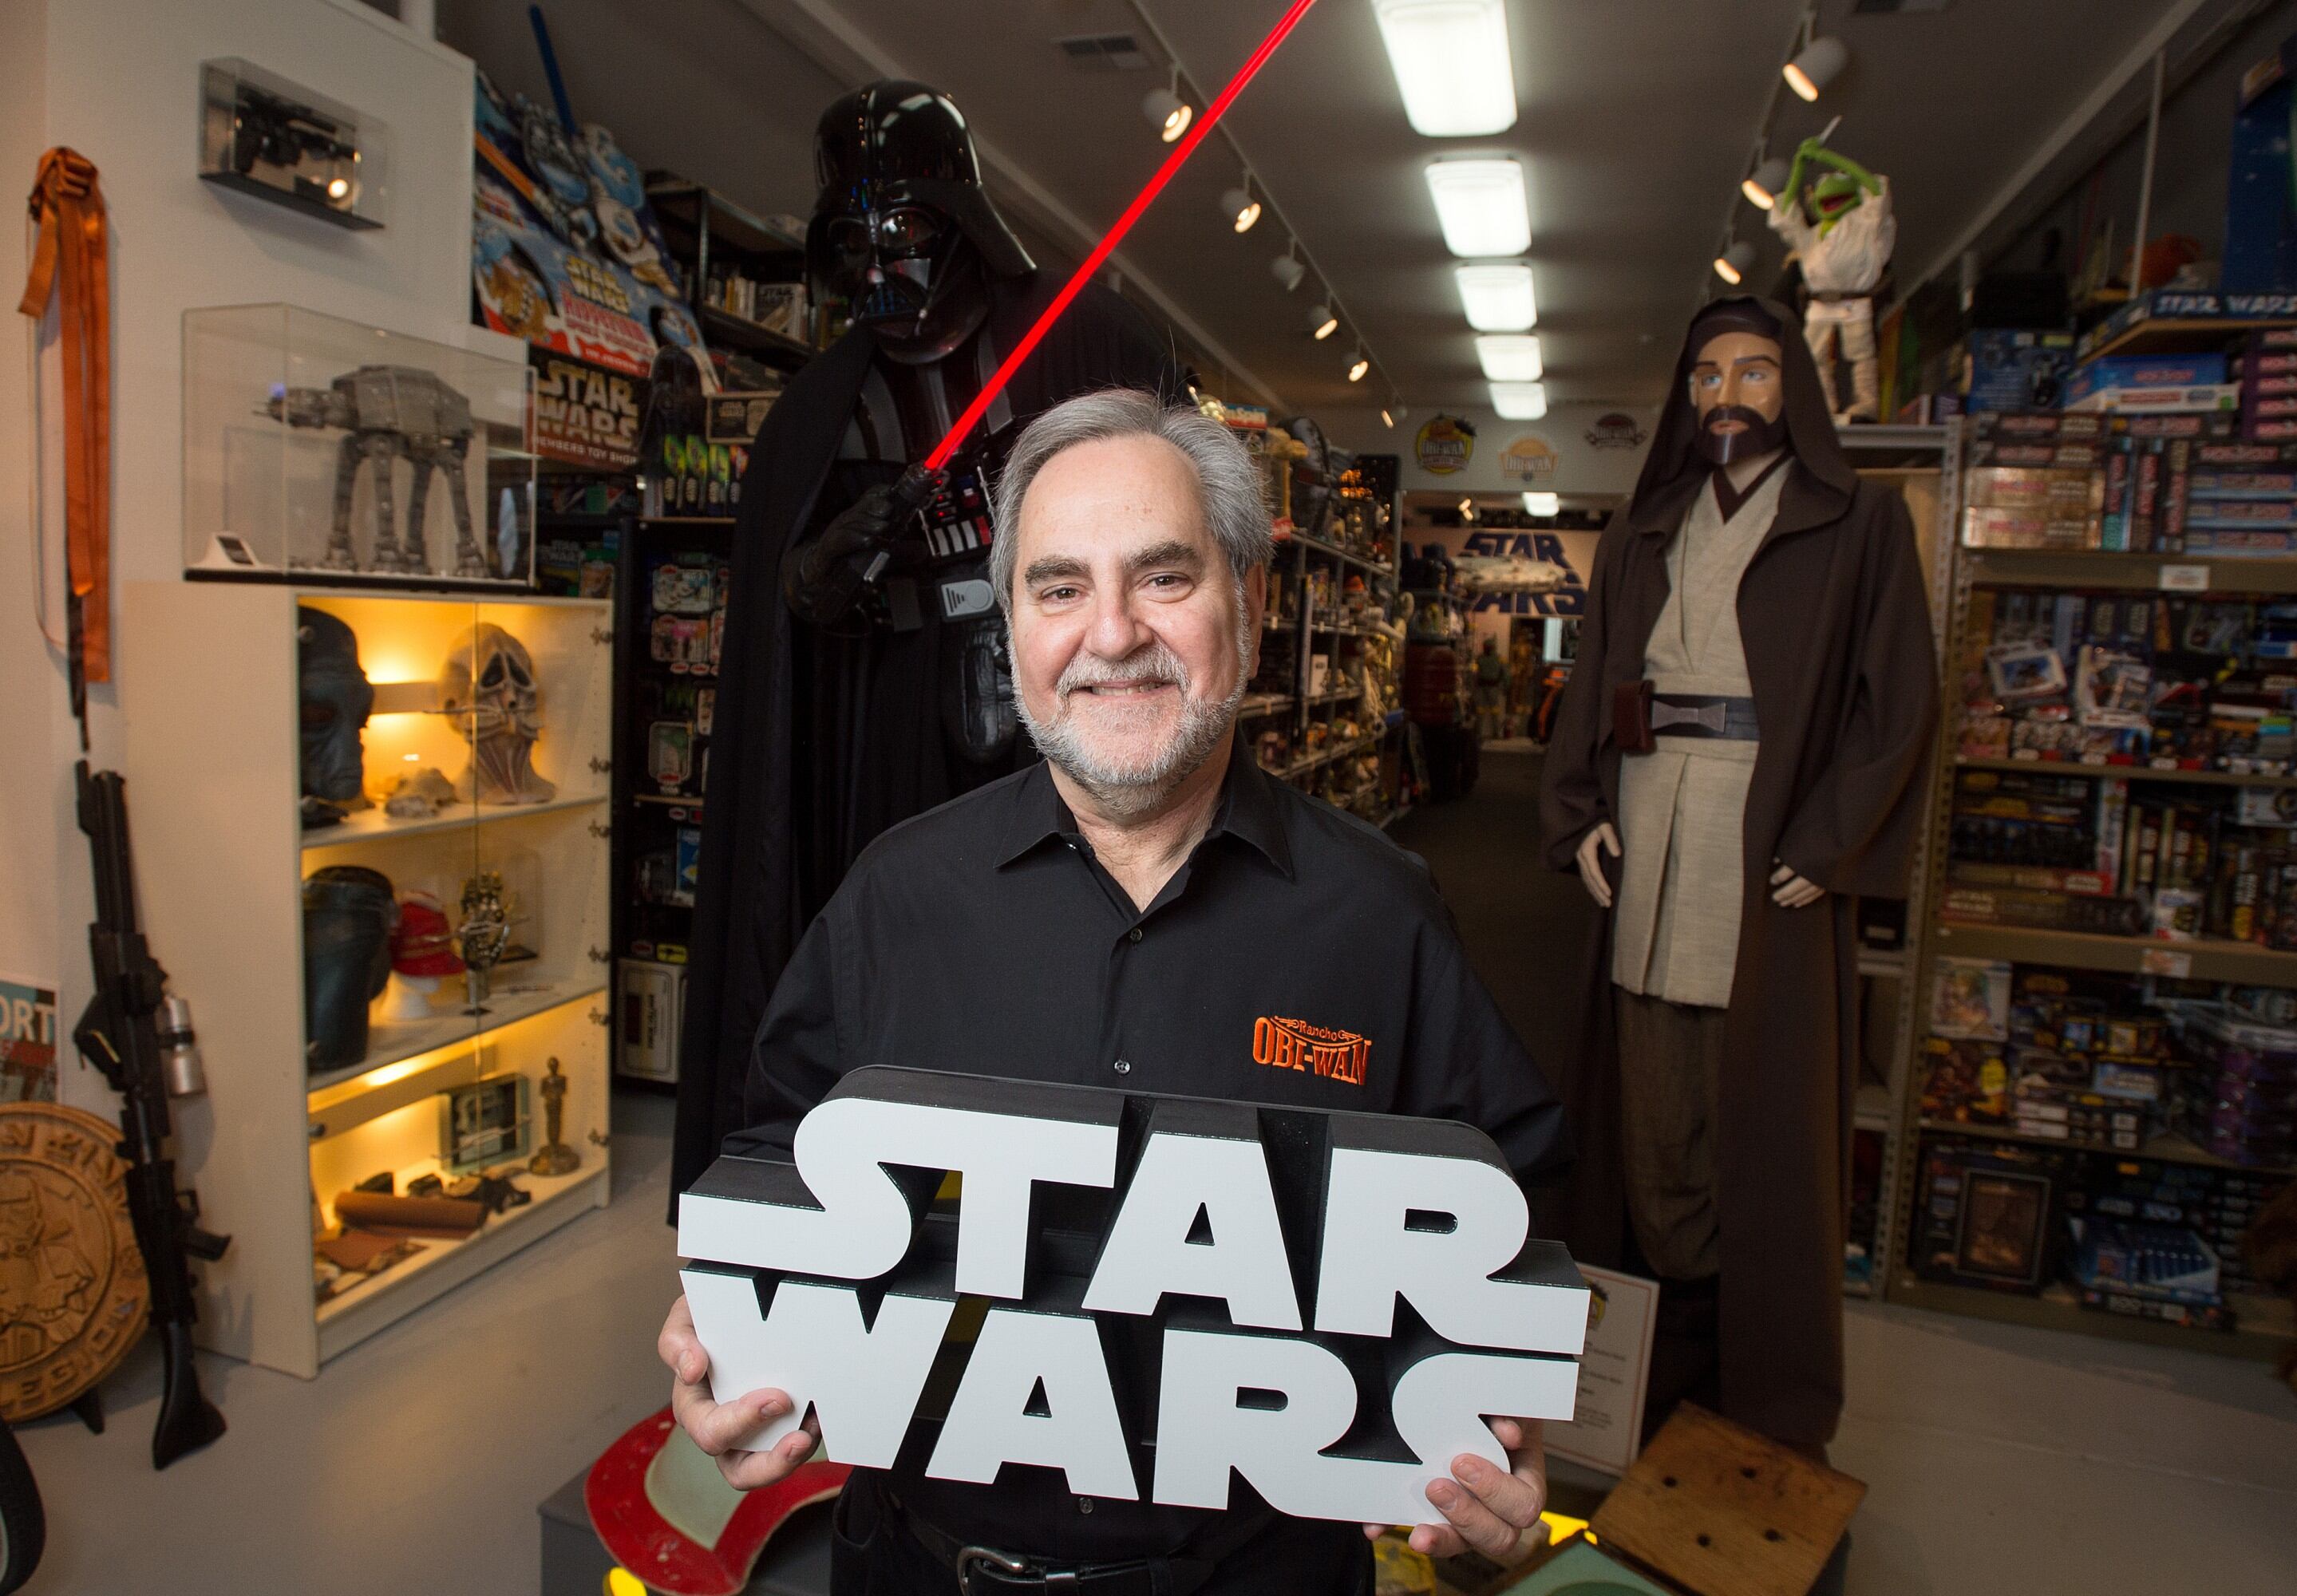 Fueron robado más de 200 mil dólares en productos de Star Wars.